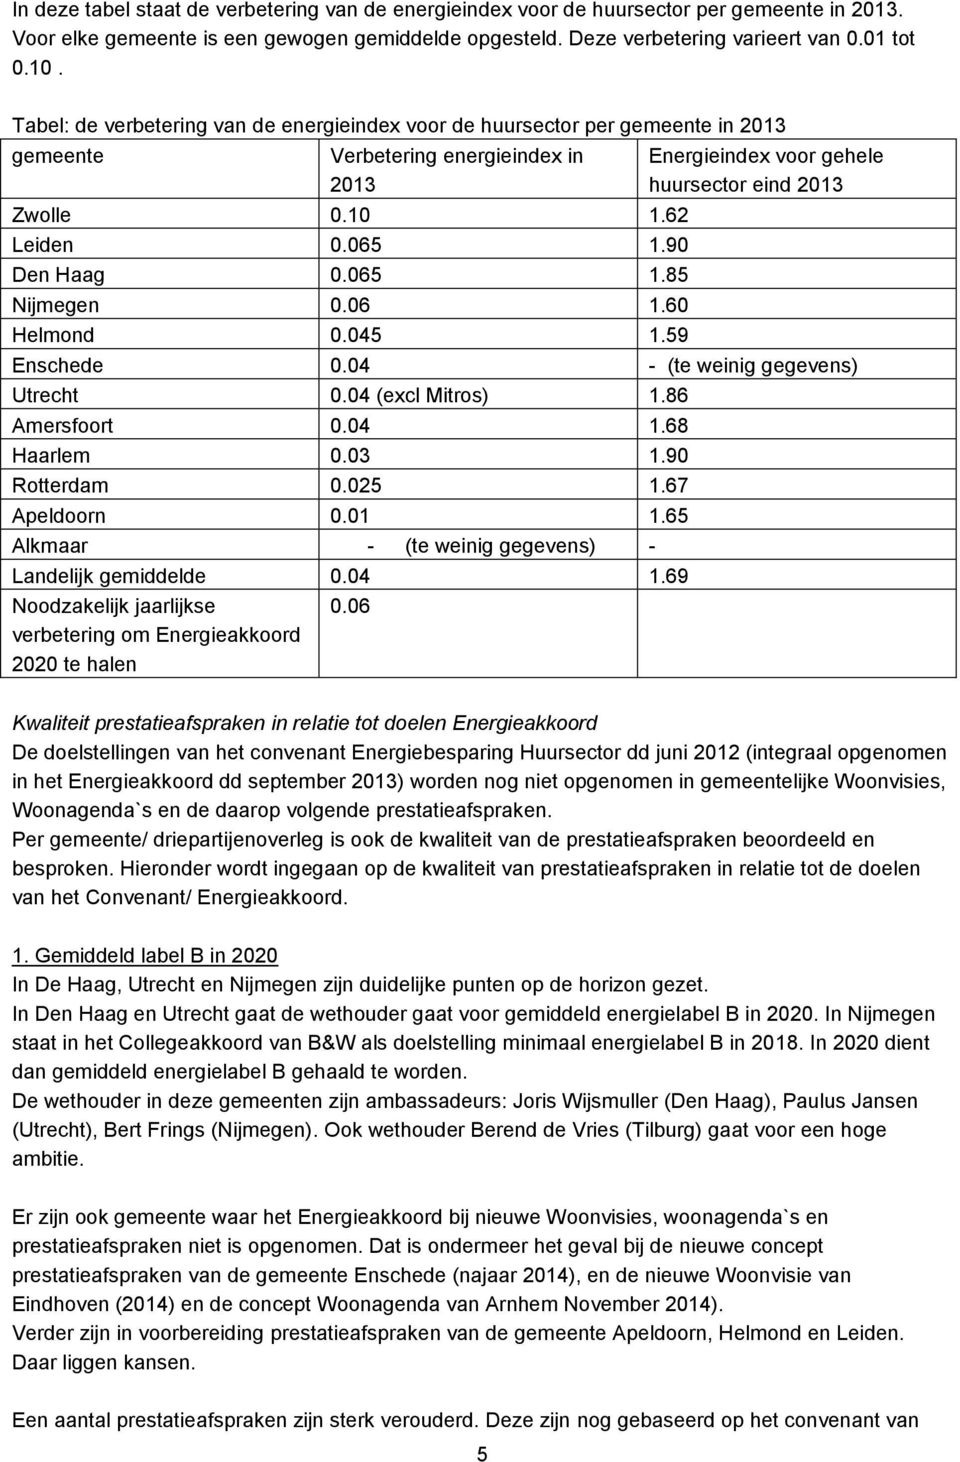 60 Helmond 0.045 1.59 Energieindex voor gehele huursector eind 2013 Enschede 0.04 - (te weinig gegevens) Utrecht 0.04 (excl Mitros) 1.86 Amersfoort 0.04 1.68 Haarlem 0.03 1.90 Rotterdam 0.025 1.